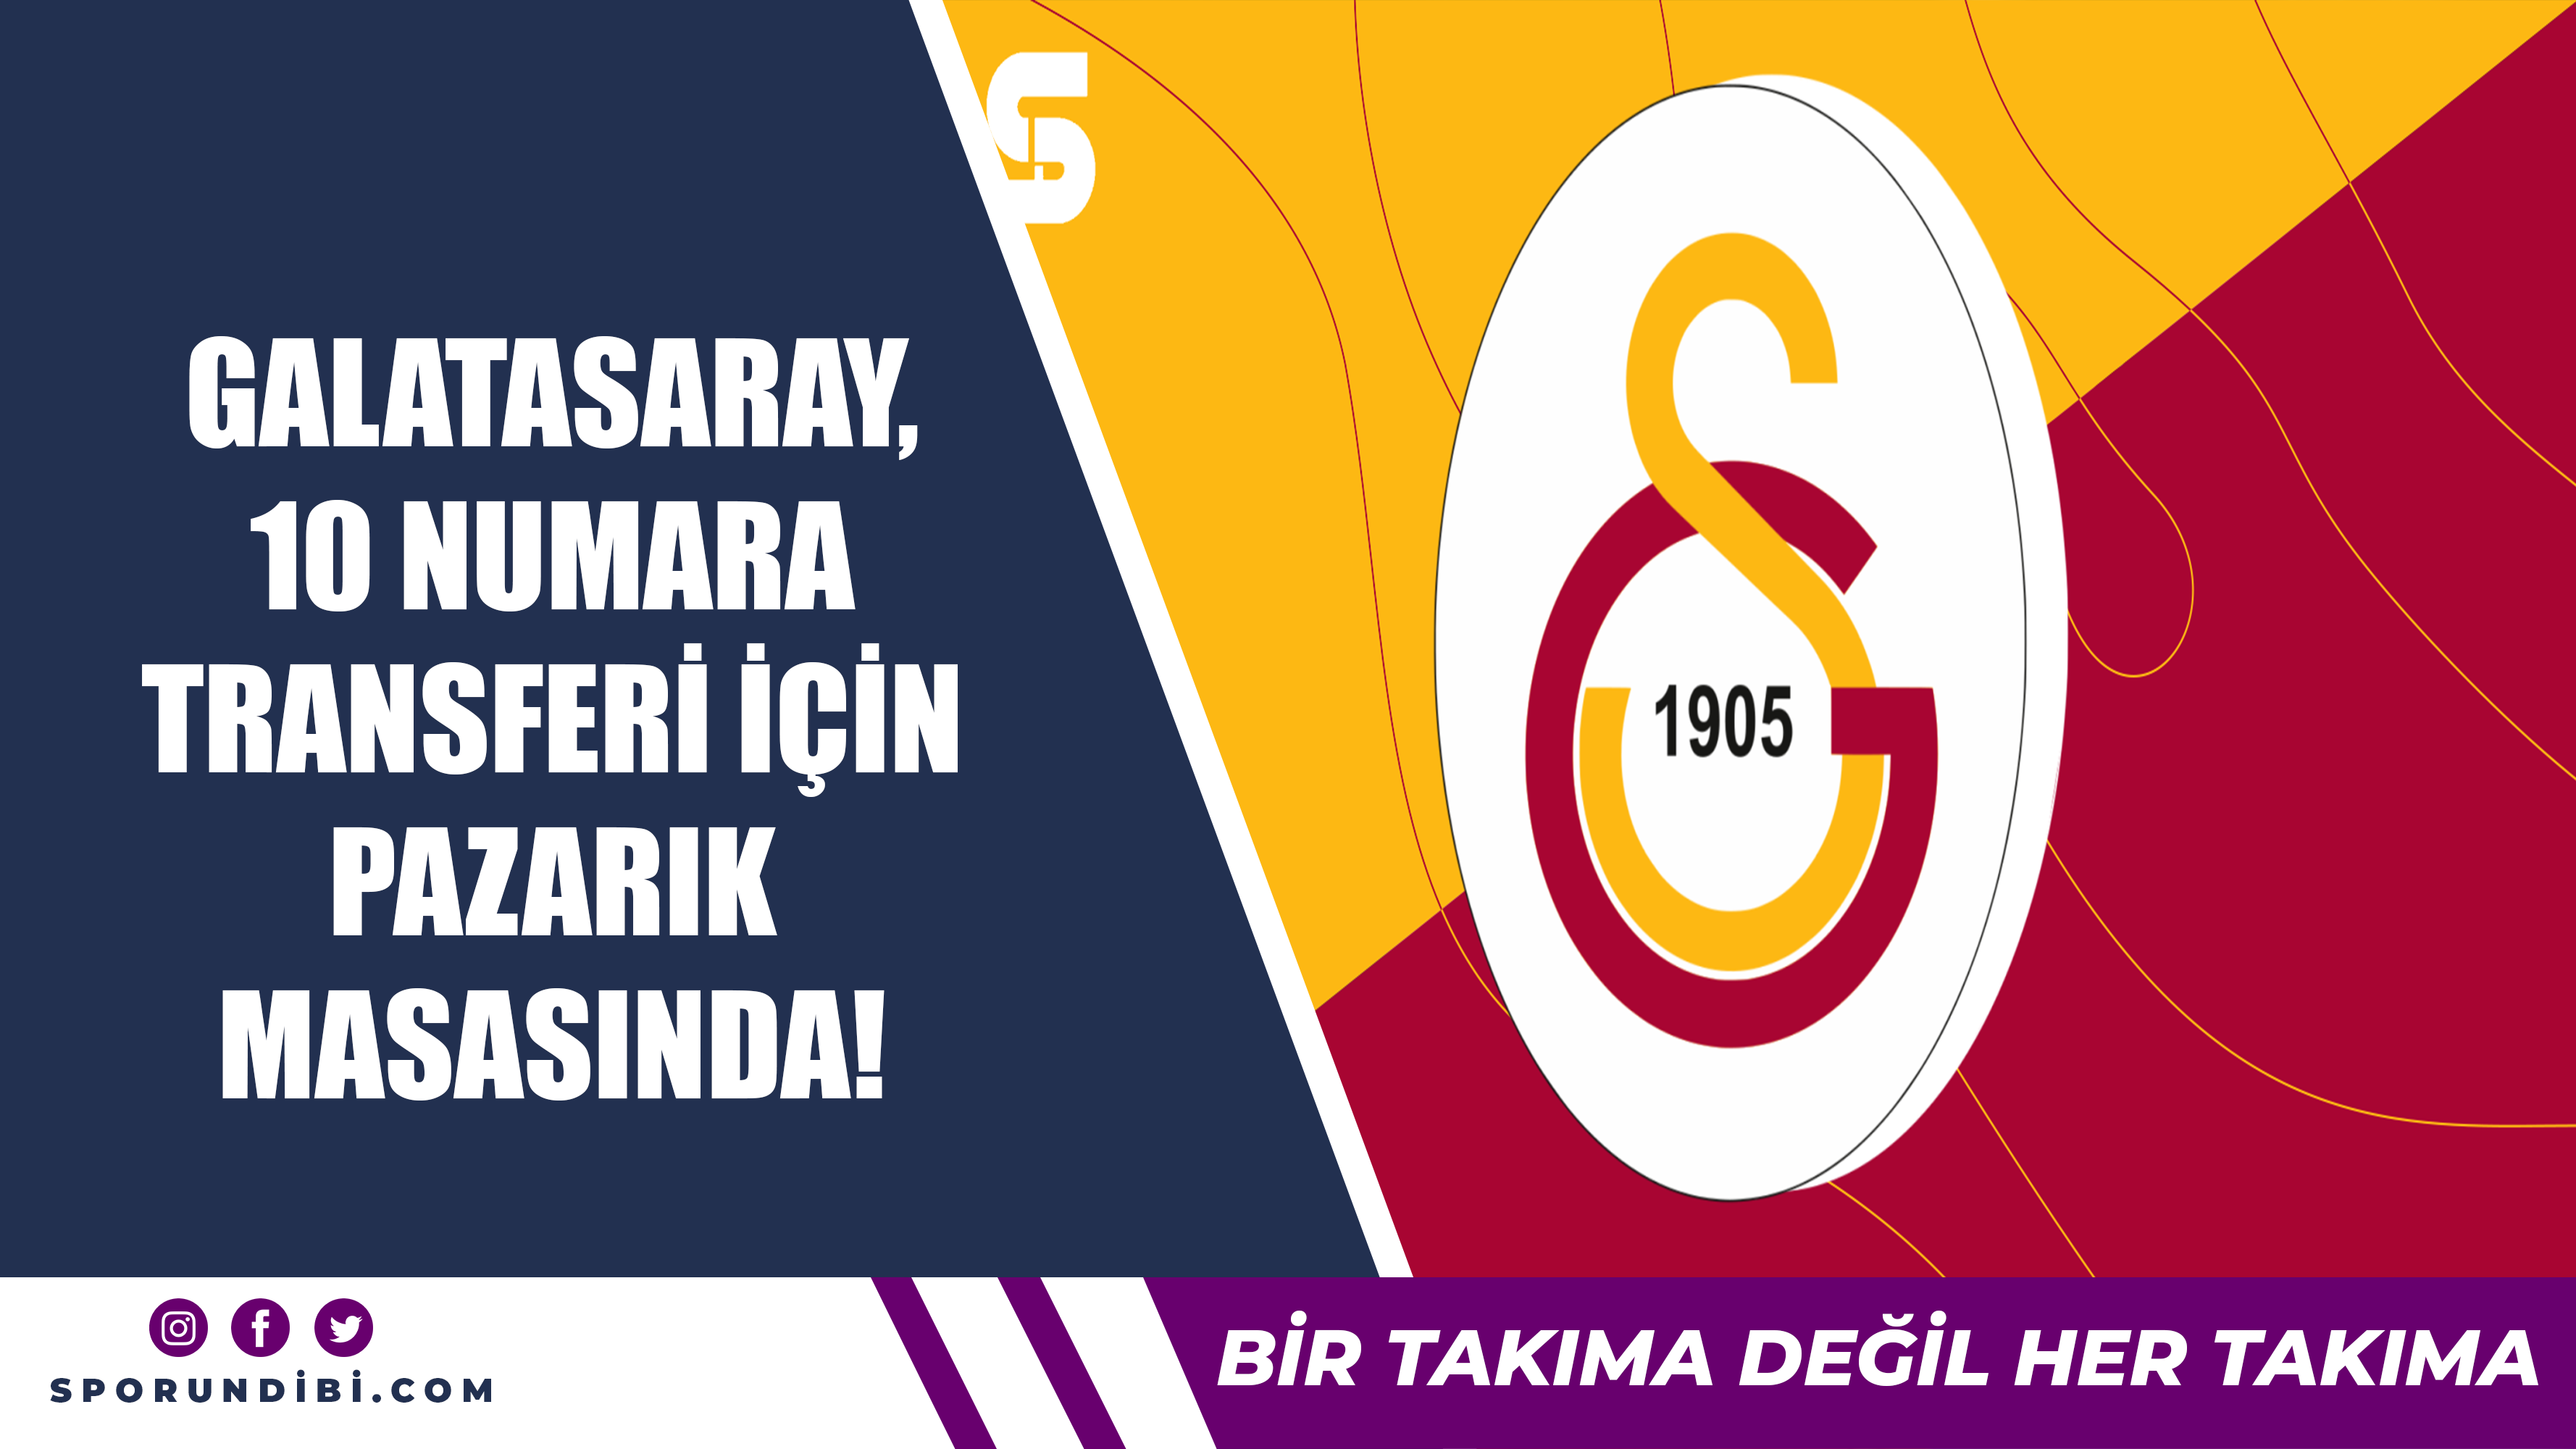 Galatasaray, 10 numara transferi için pazarlık masasında!